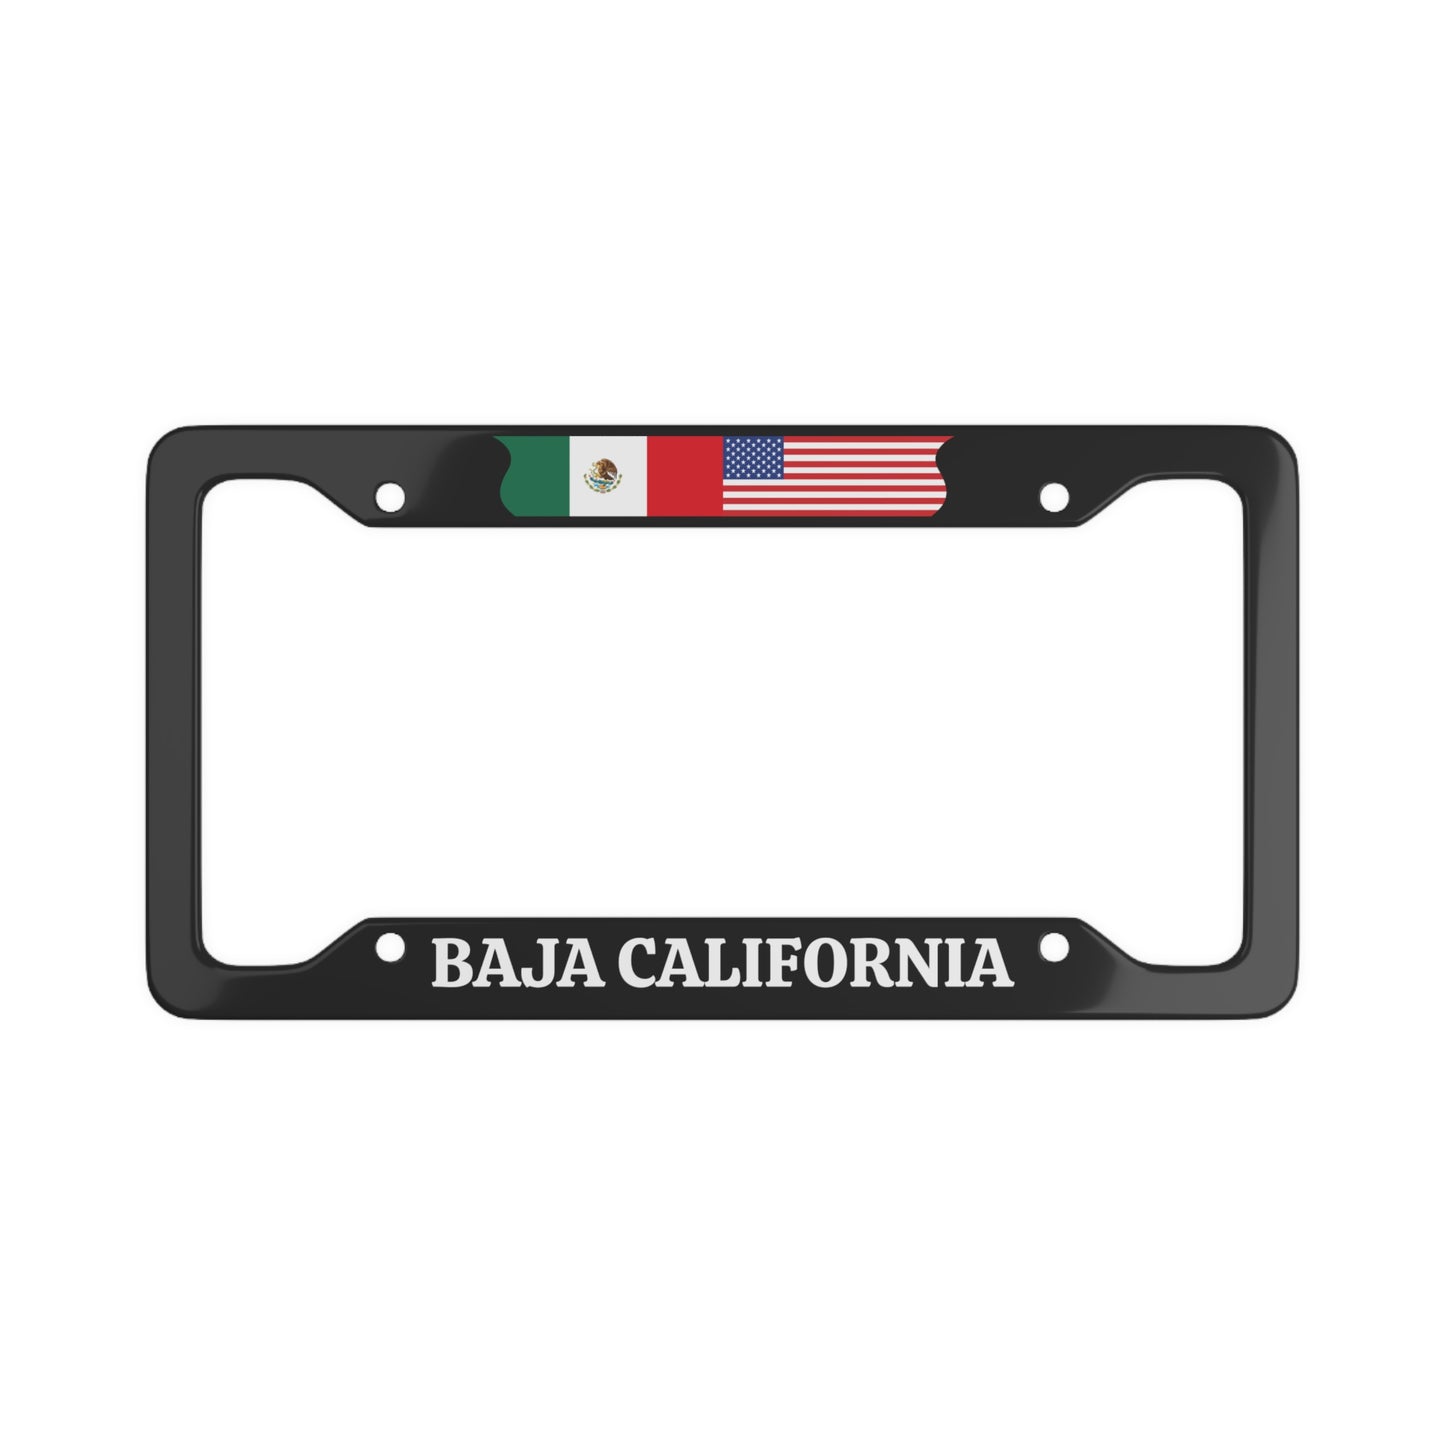 Baja California License Plate Frame